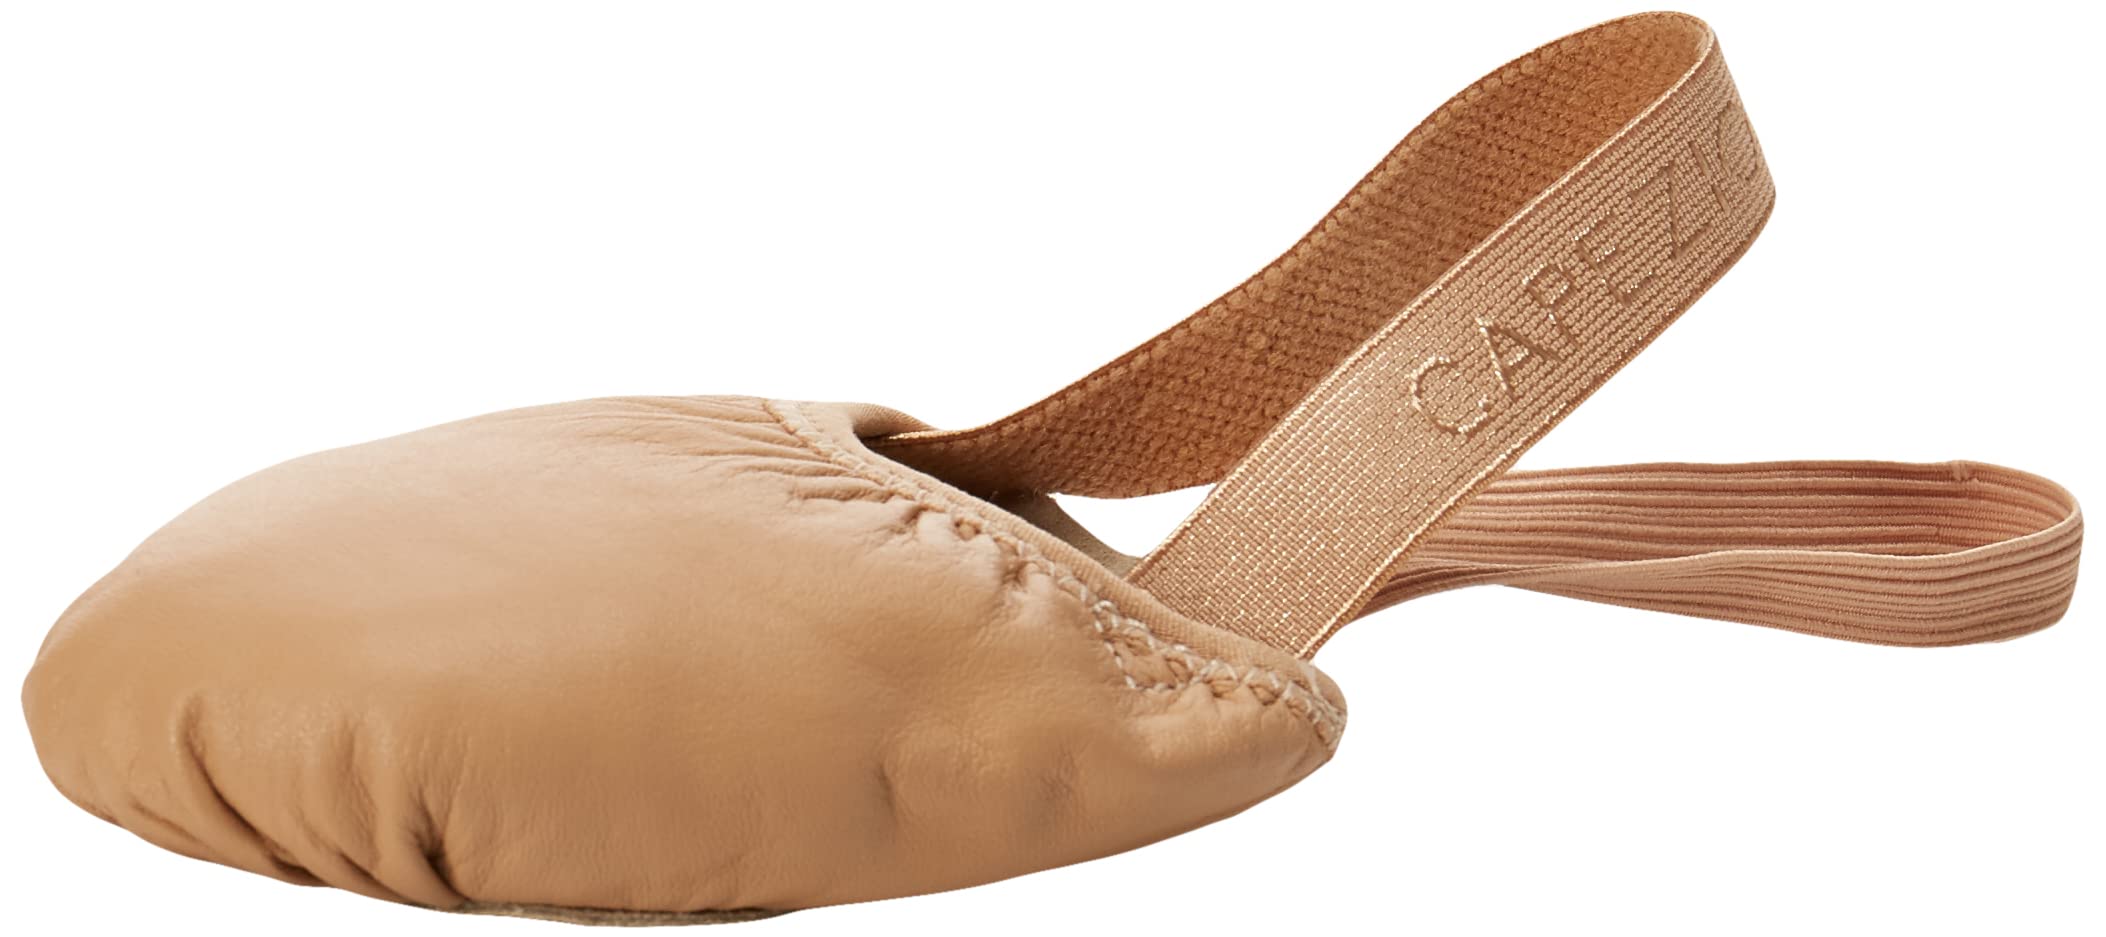 Capezio Leather Pirouette II Dance Shoe